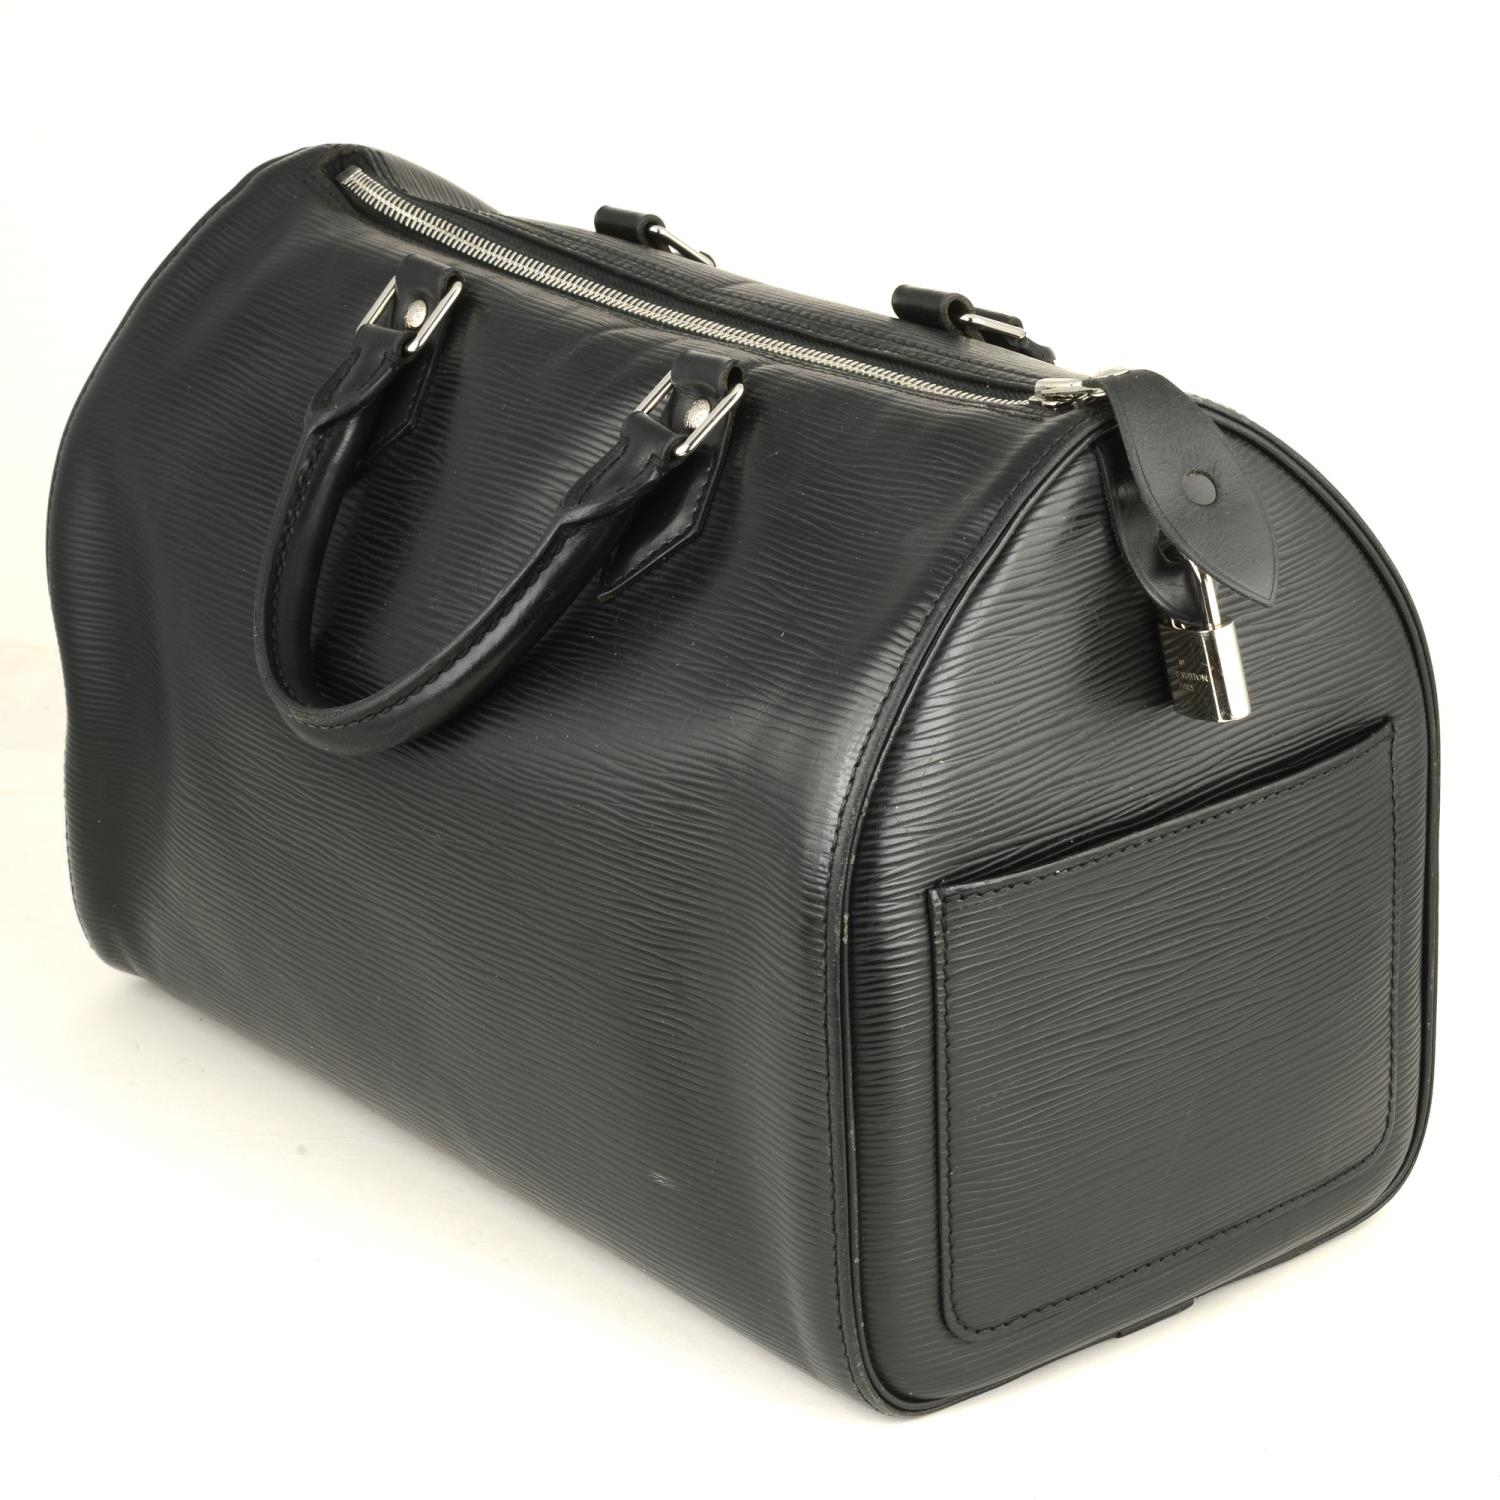 LOUIS VUITTON - an Epi Speedy handbag. - Image 3 of 5